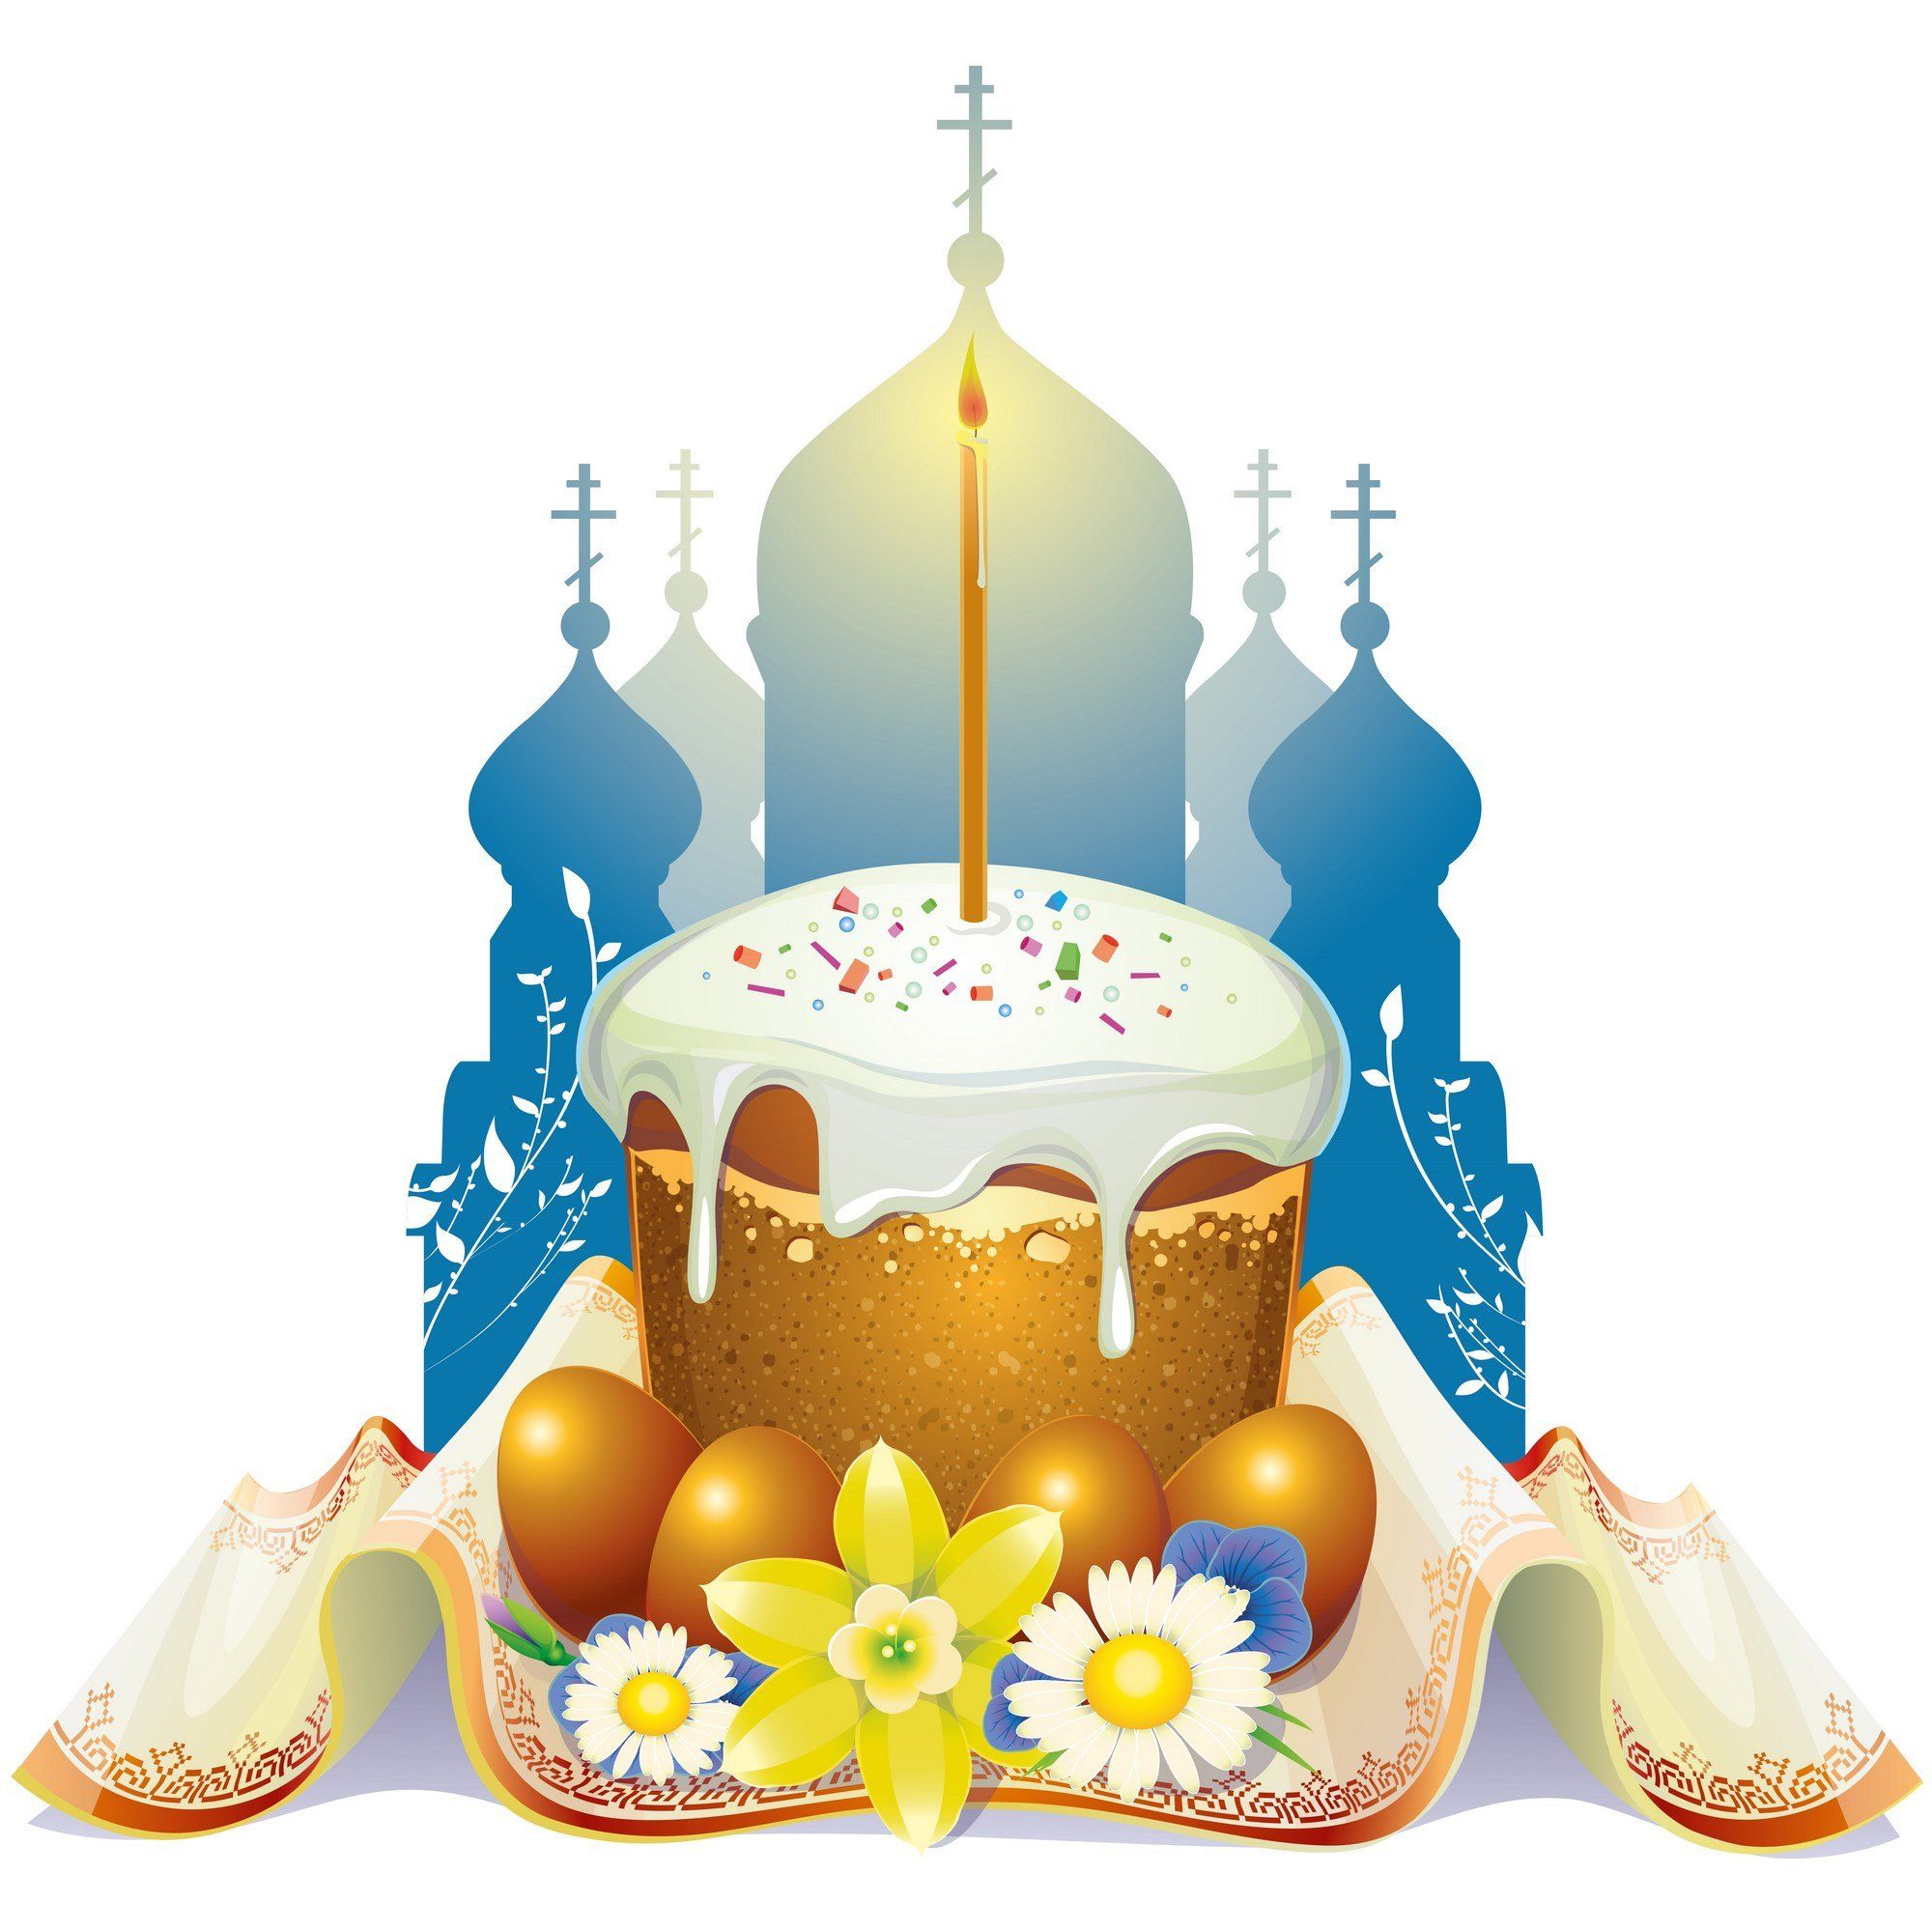 Православная Пасха 2020 - день рождения Христа, Воскресения